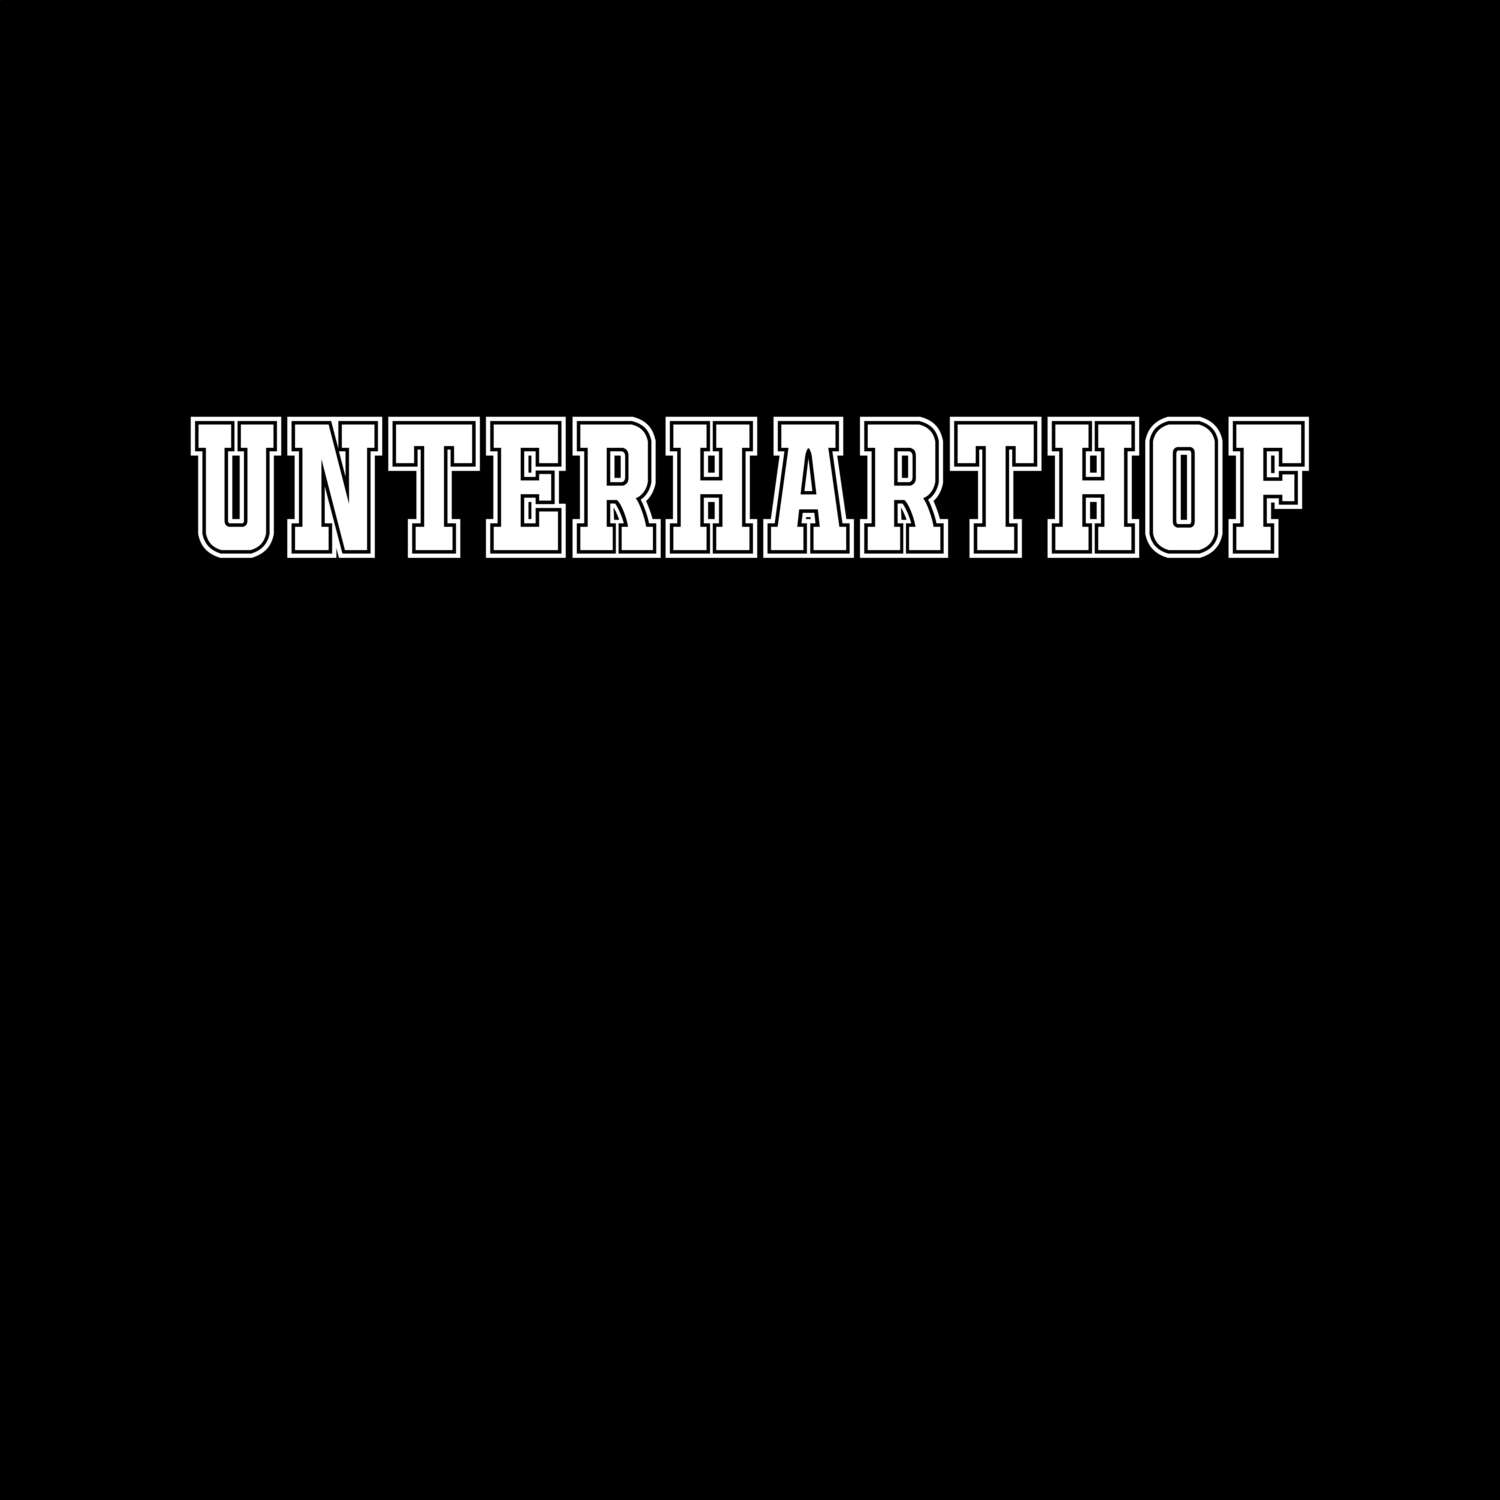 Unterharthof T-Shirt »Classic«